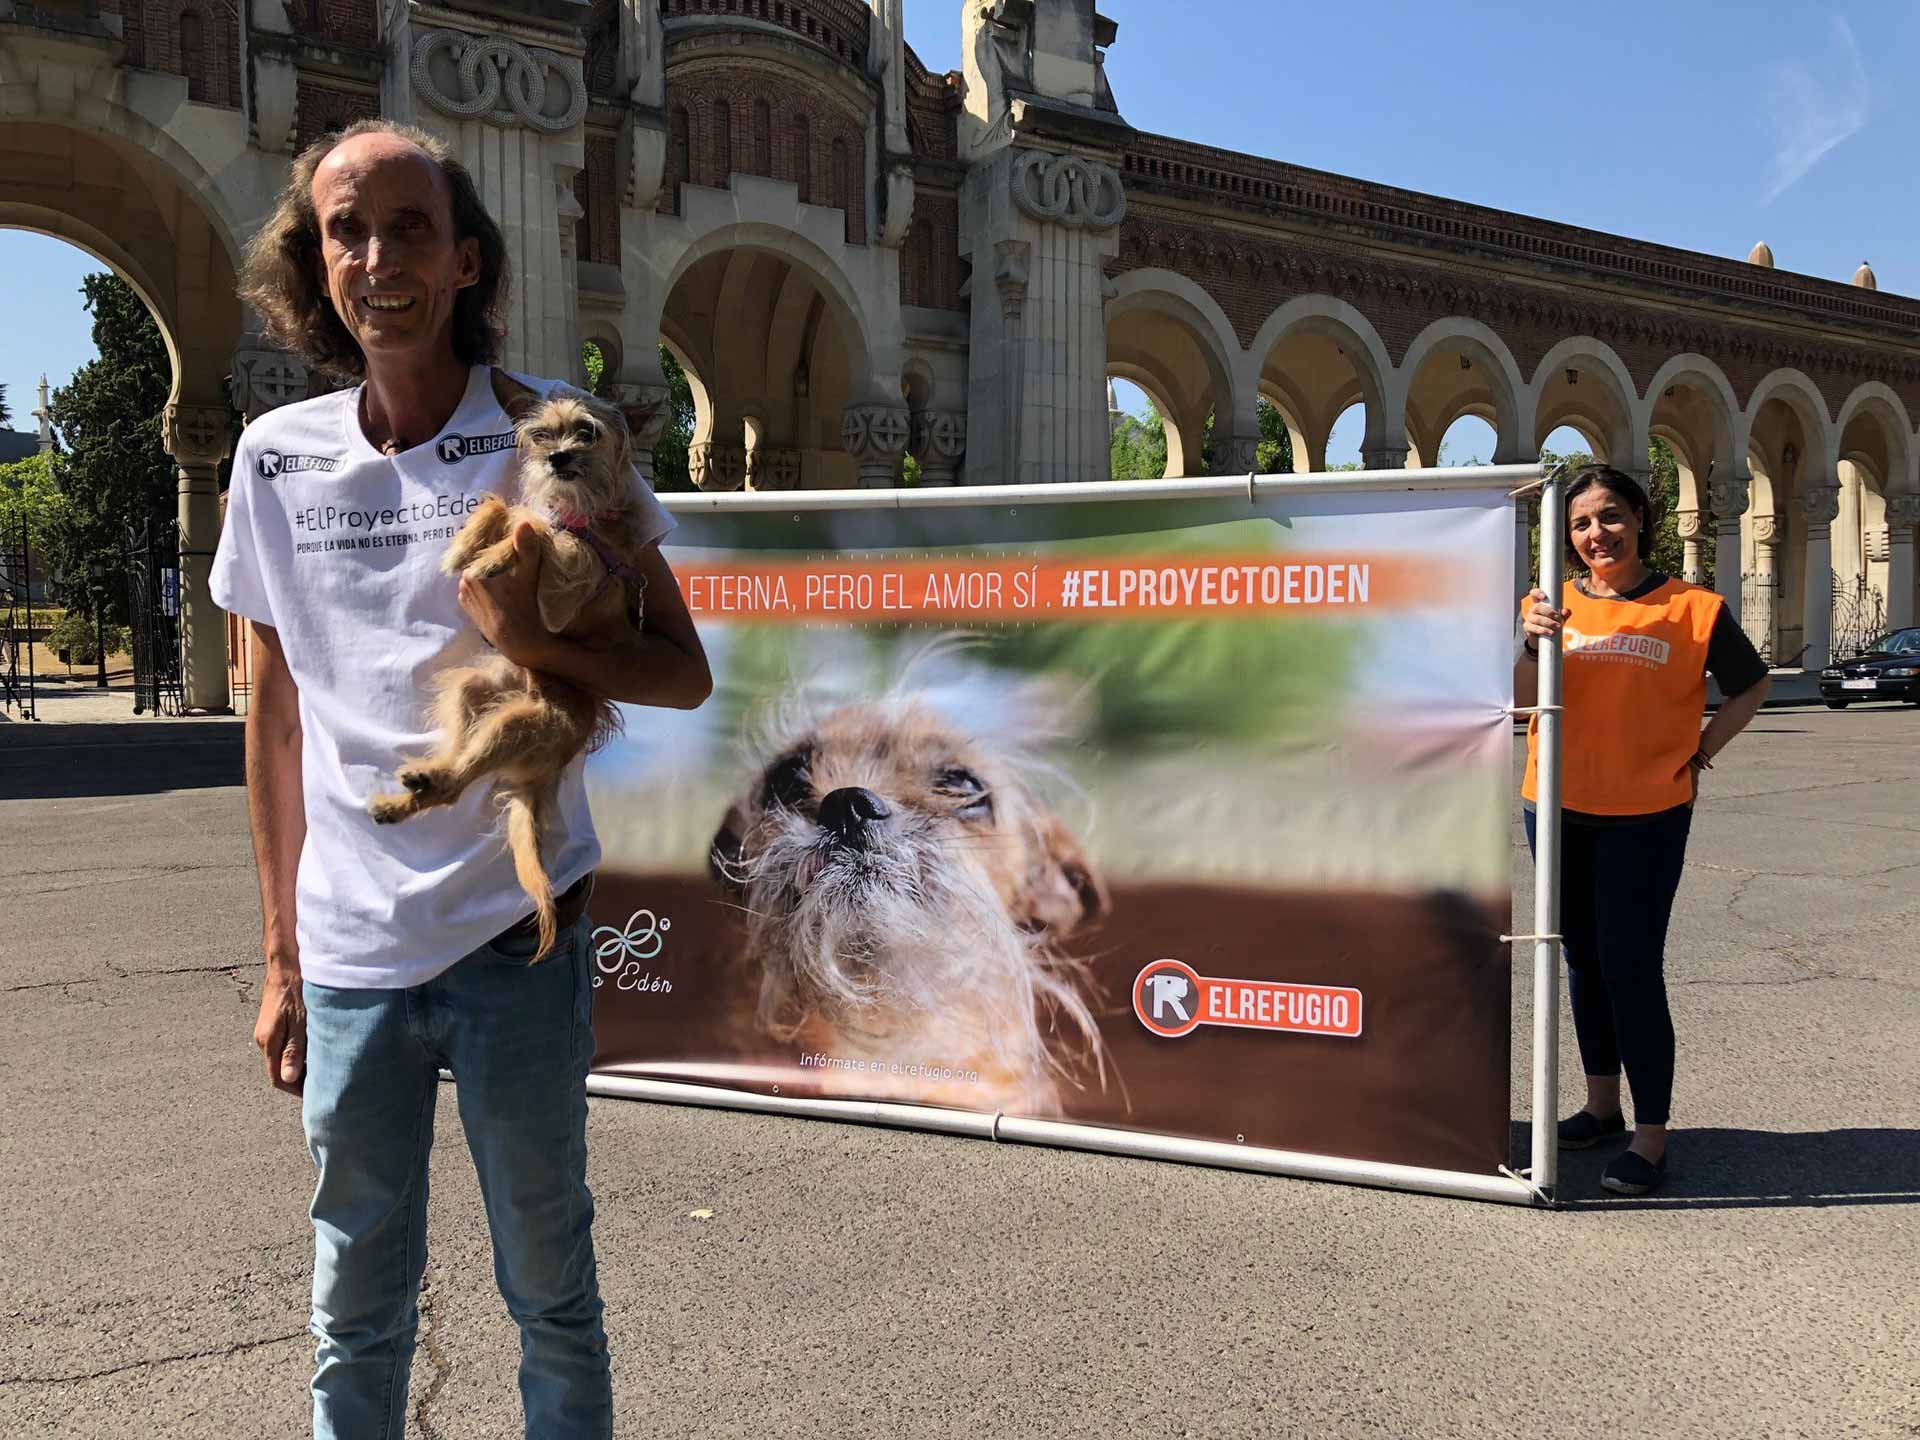 Proyecto Edén: Programa de acogida para perros de personas fallecidas